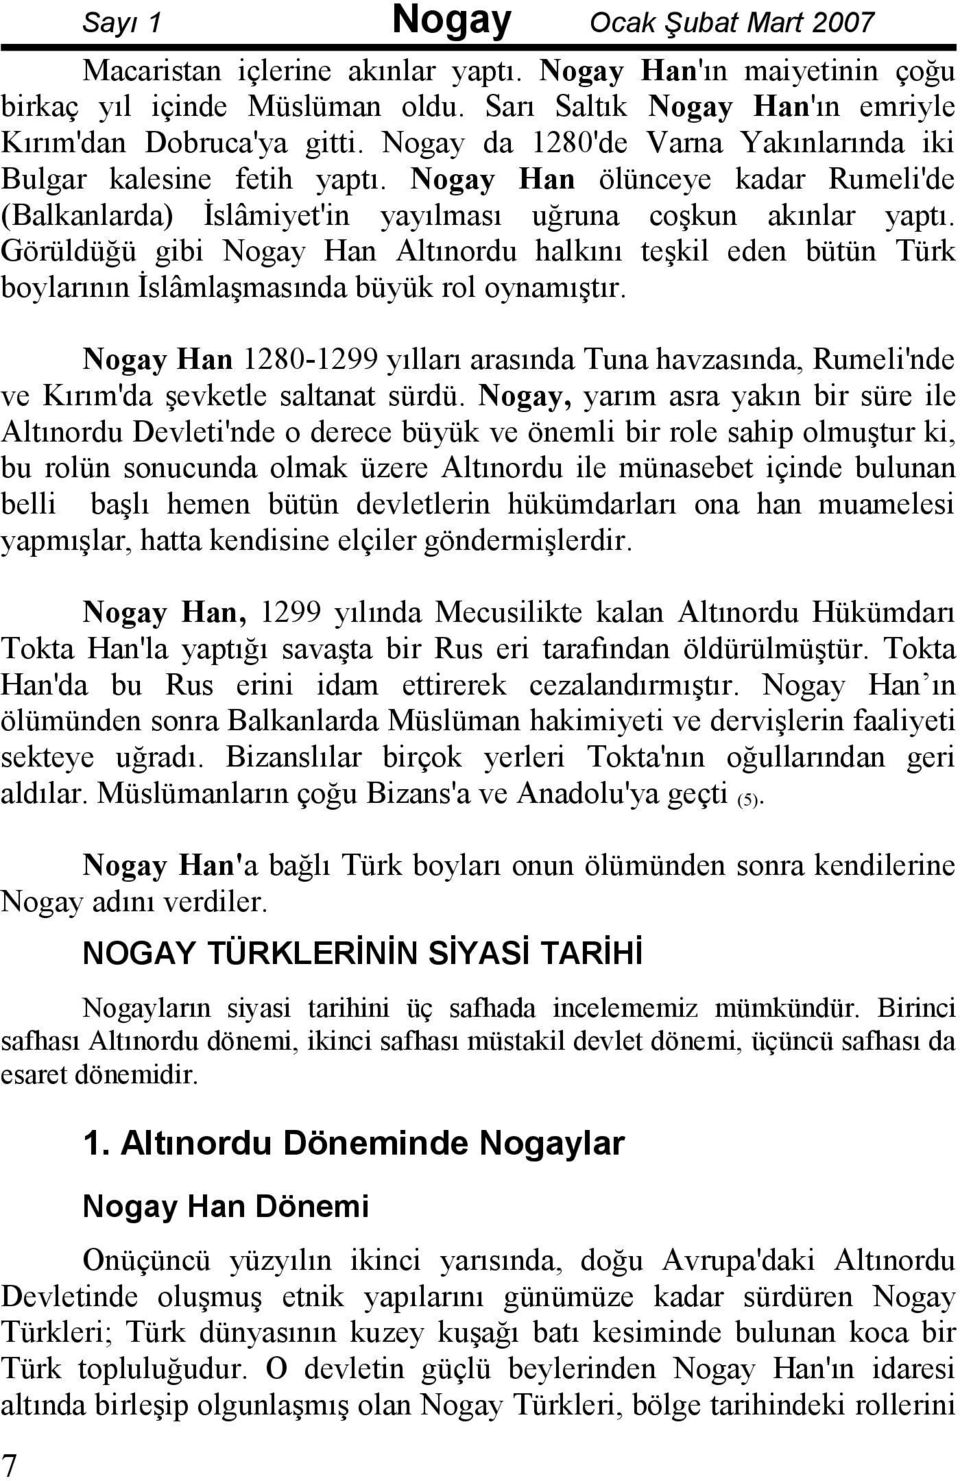 Görüldüğü gibi Nogay Han Altınordu halkını teşkil eden bütün Türk boylarının Đslâmlaşmasında büyük rol oynamıştır.